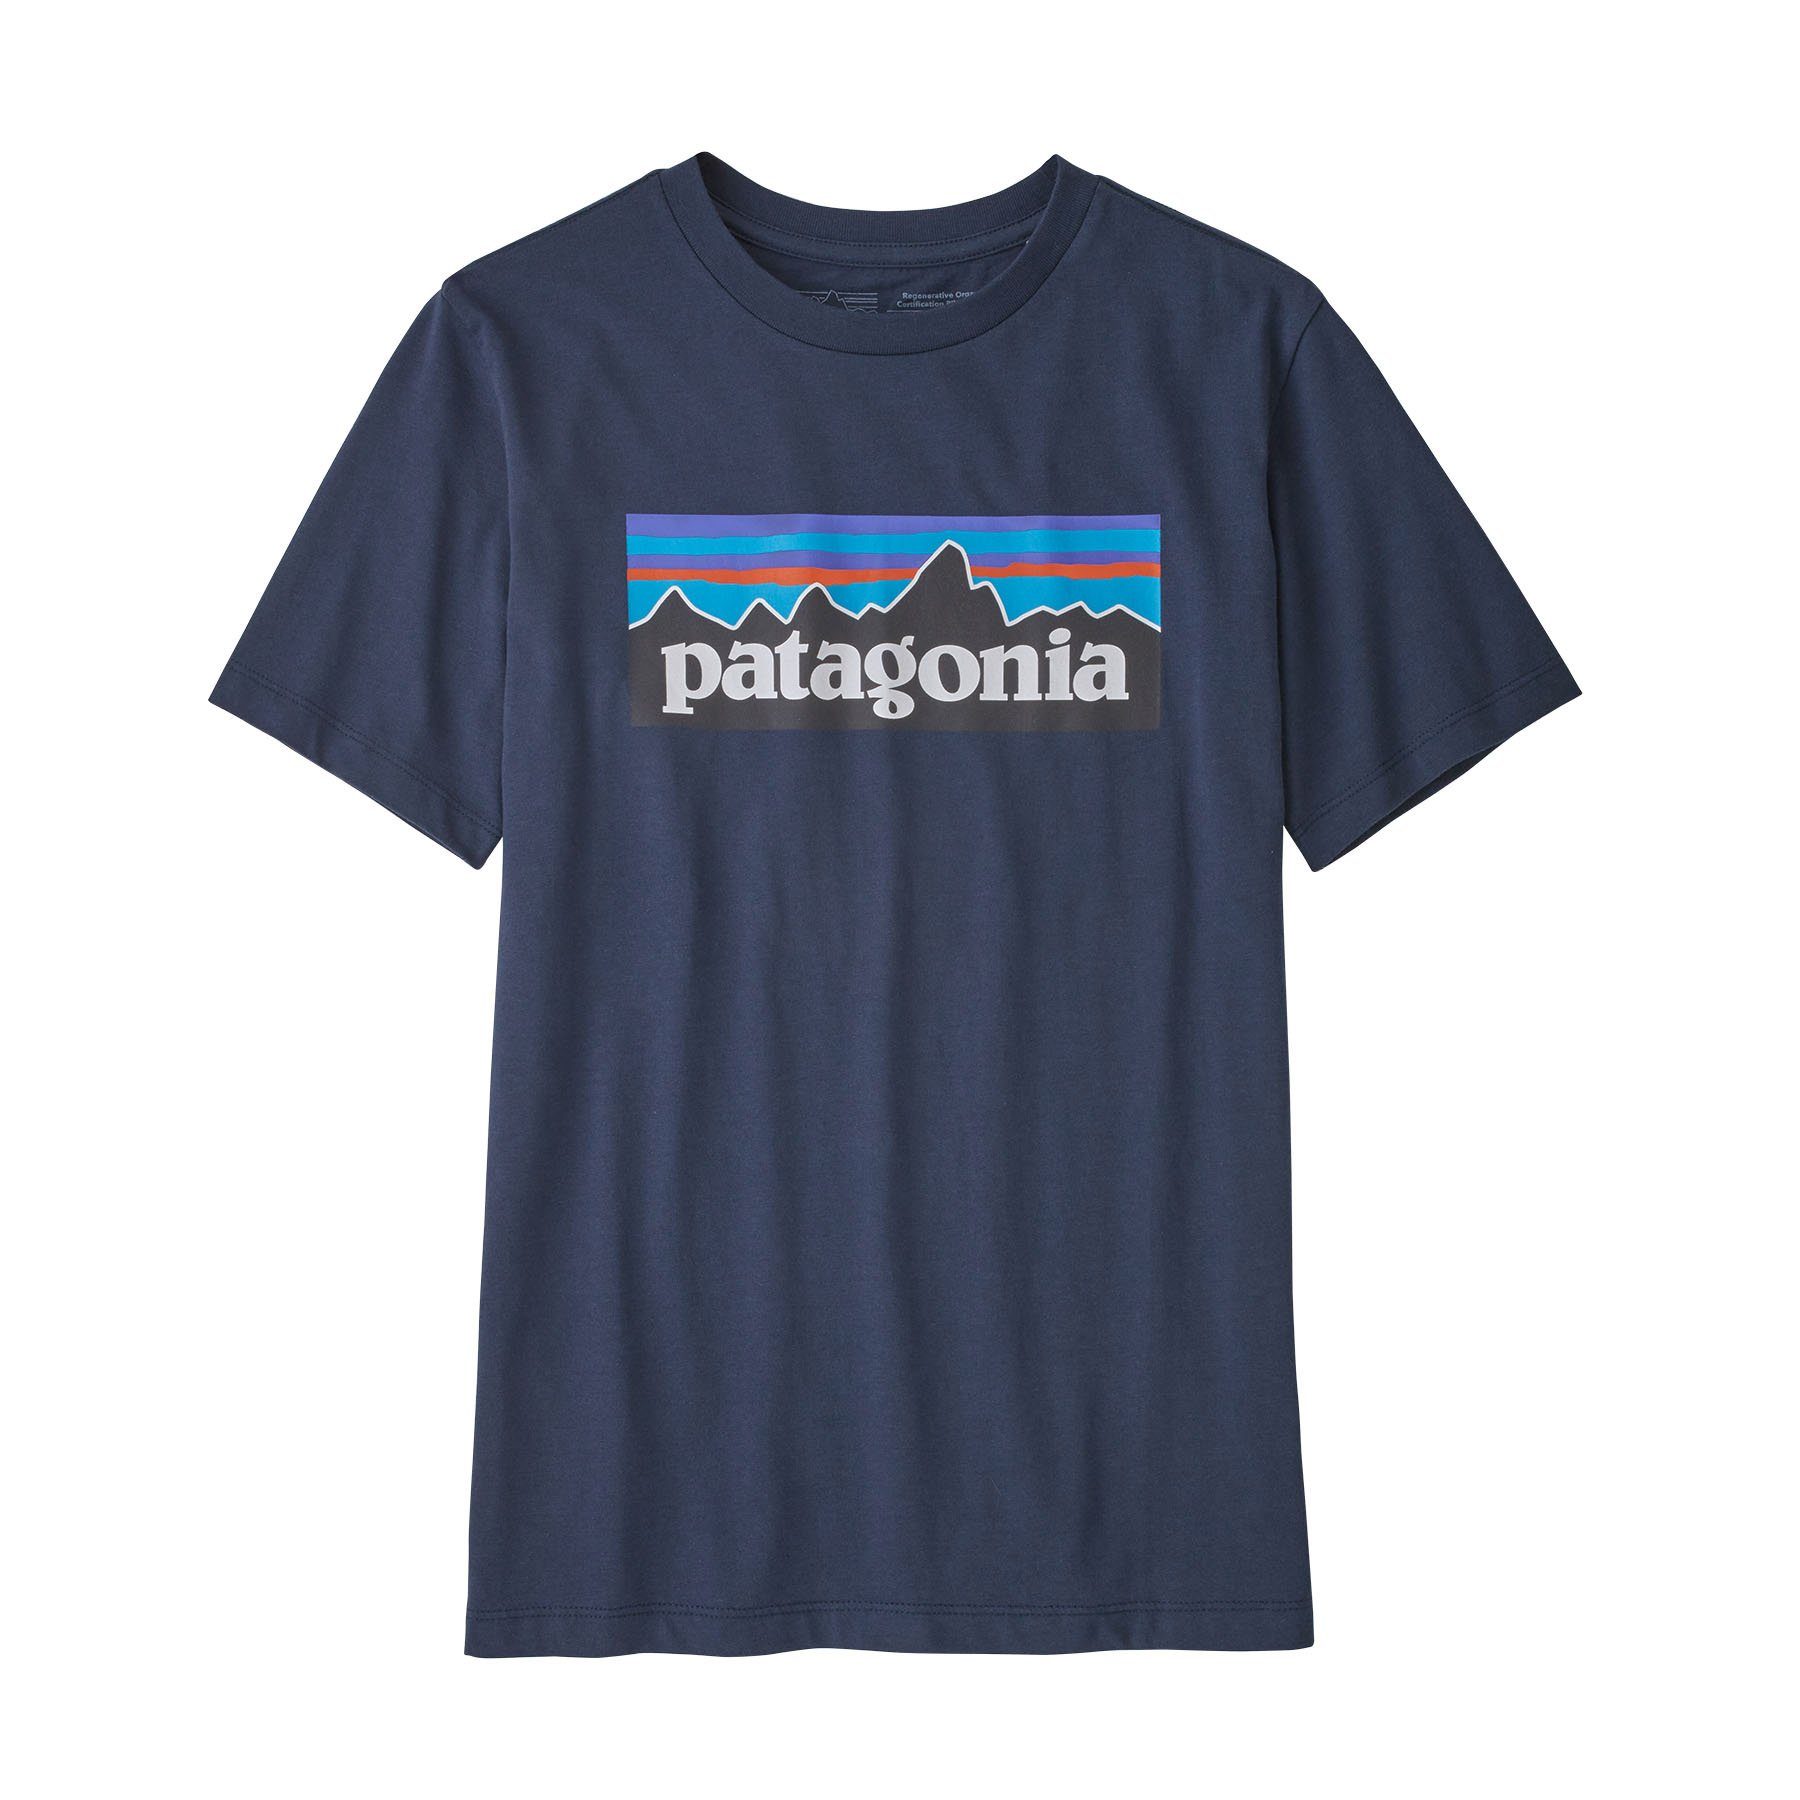 Kinder Patagonia Regenerative Organic navy P-6 T-Shirt Cotton Certified Logo T-Shirt new Patagonia Mini